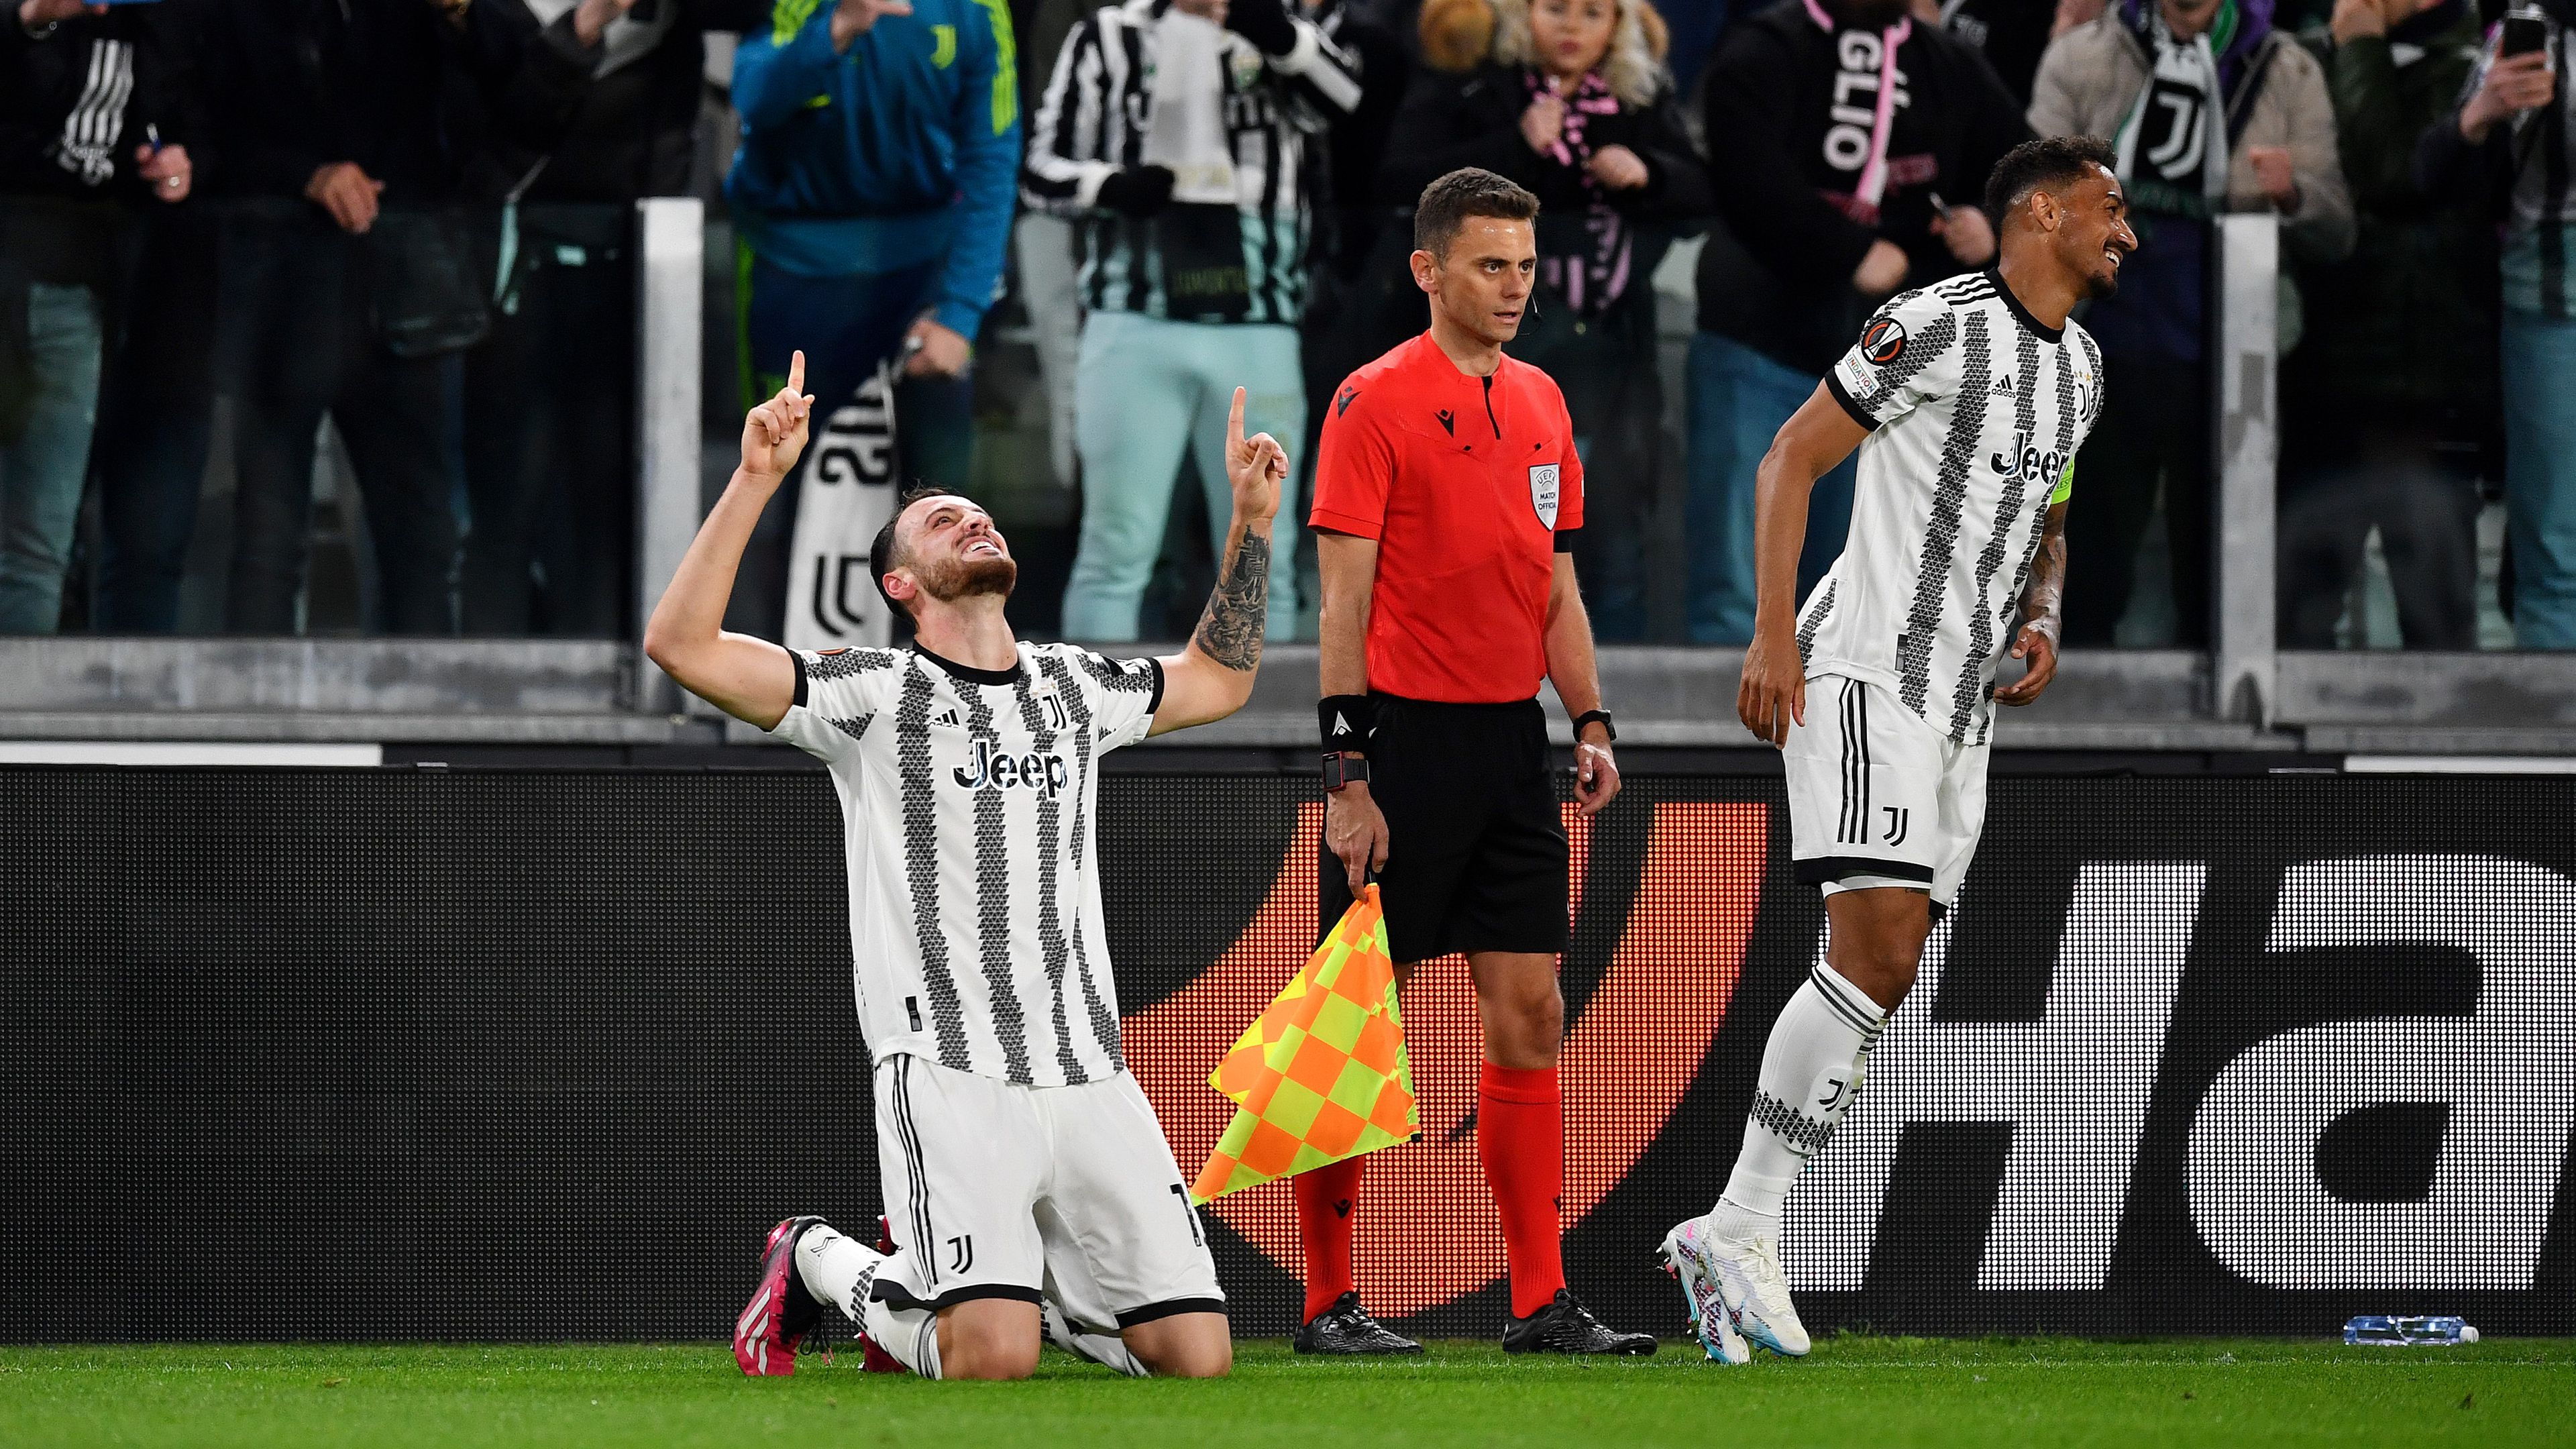 Federico Gatti első gólja a Juventusban győzelmet ért az olaszoknak – videóval